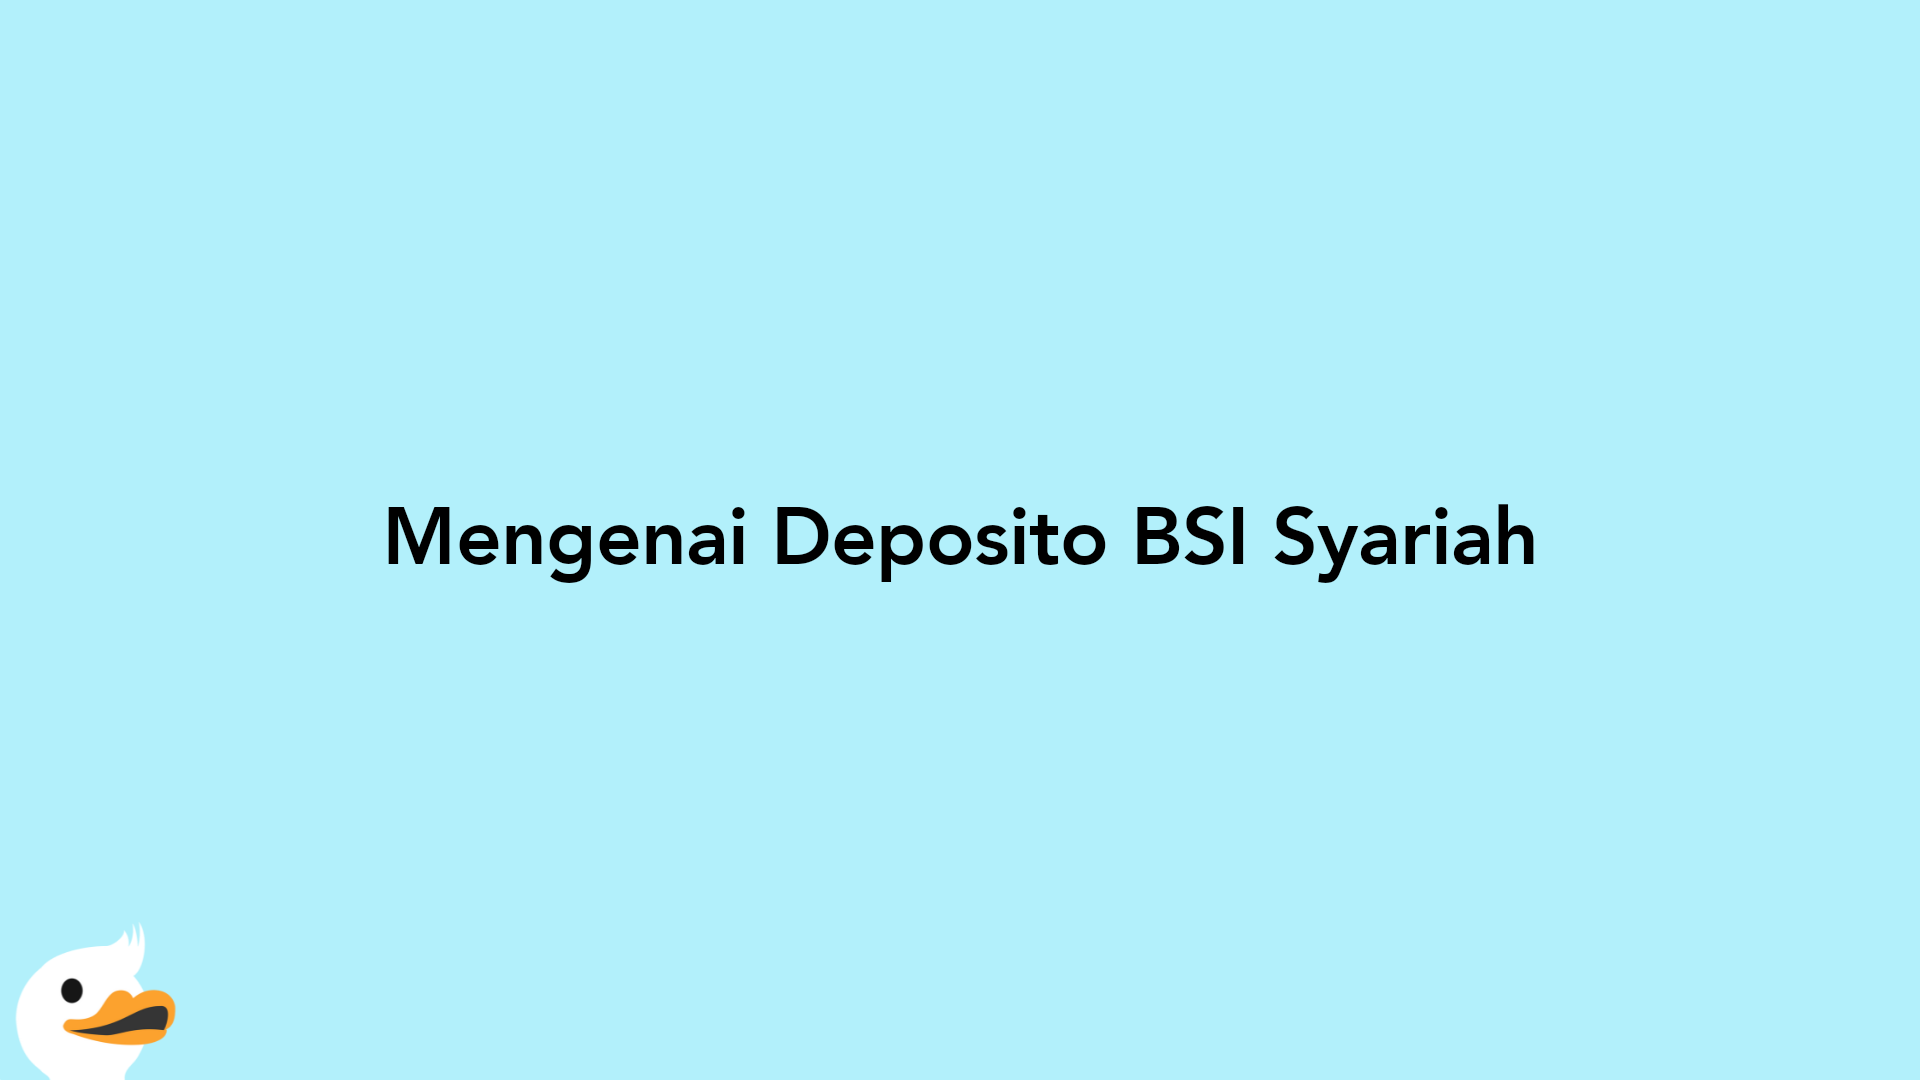 Mengenai Deposito BSI Syariah